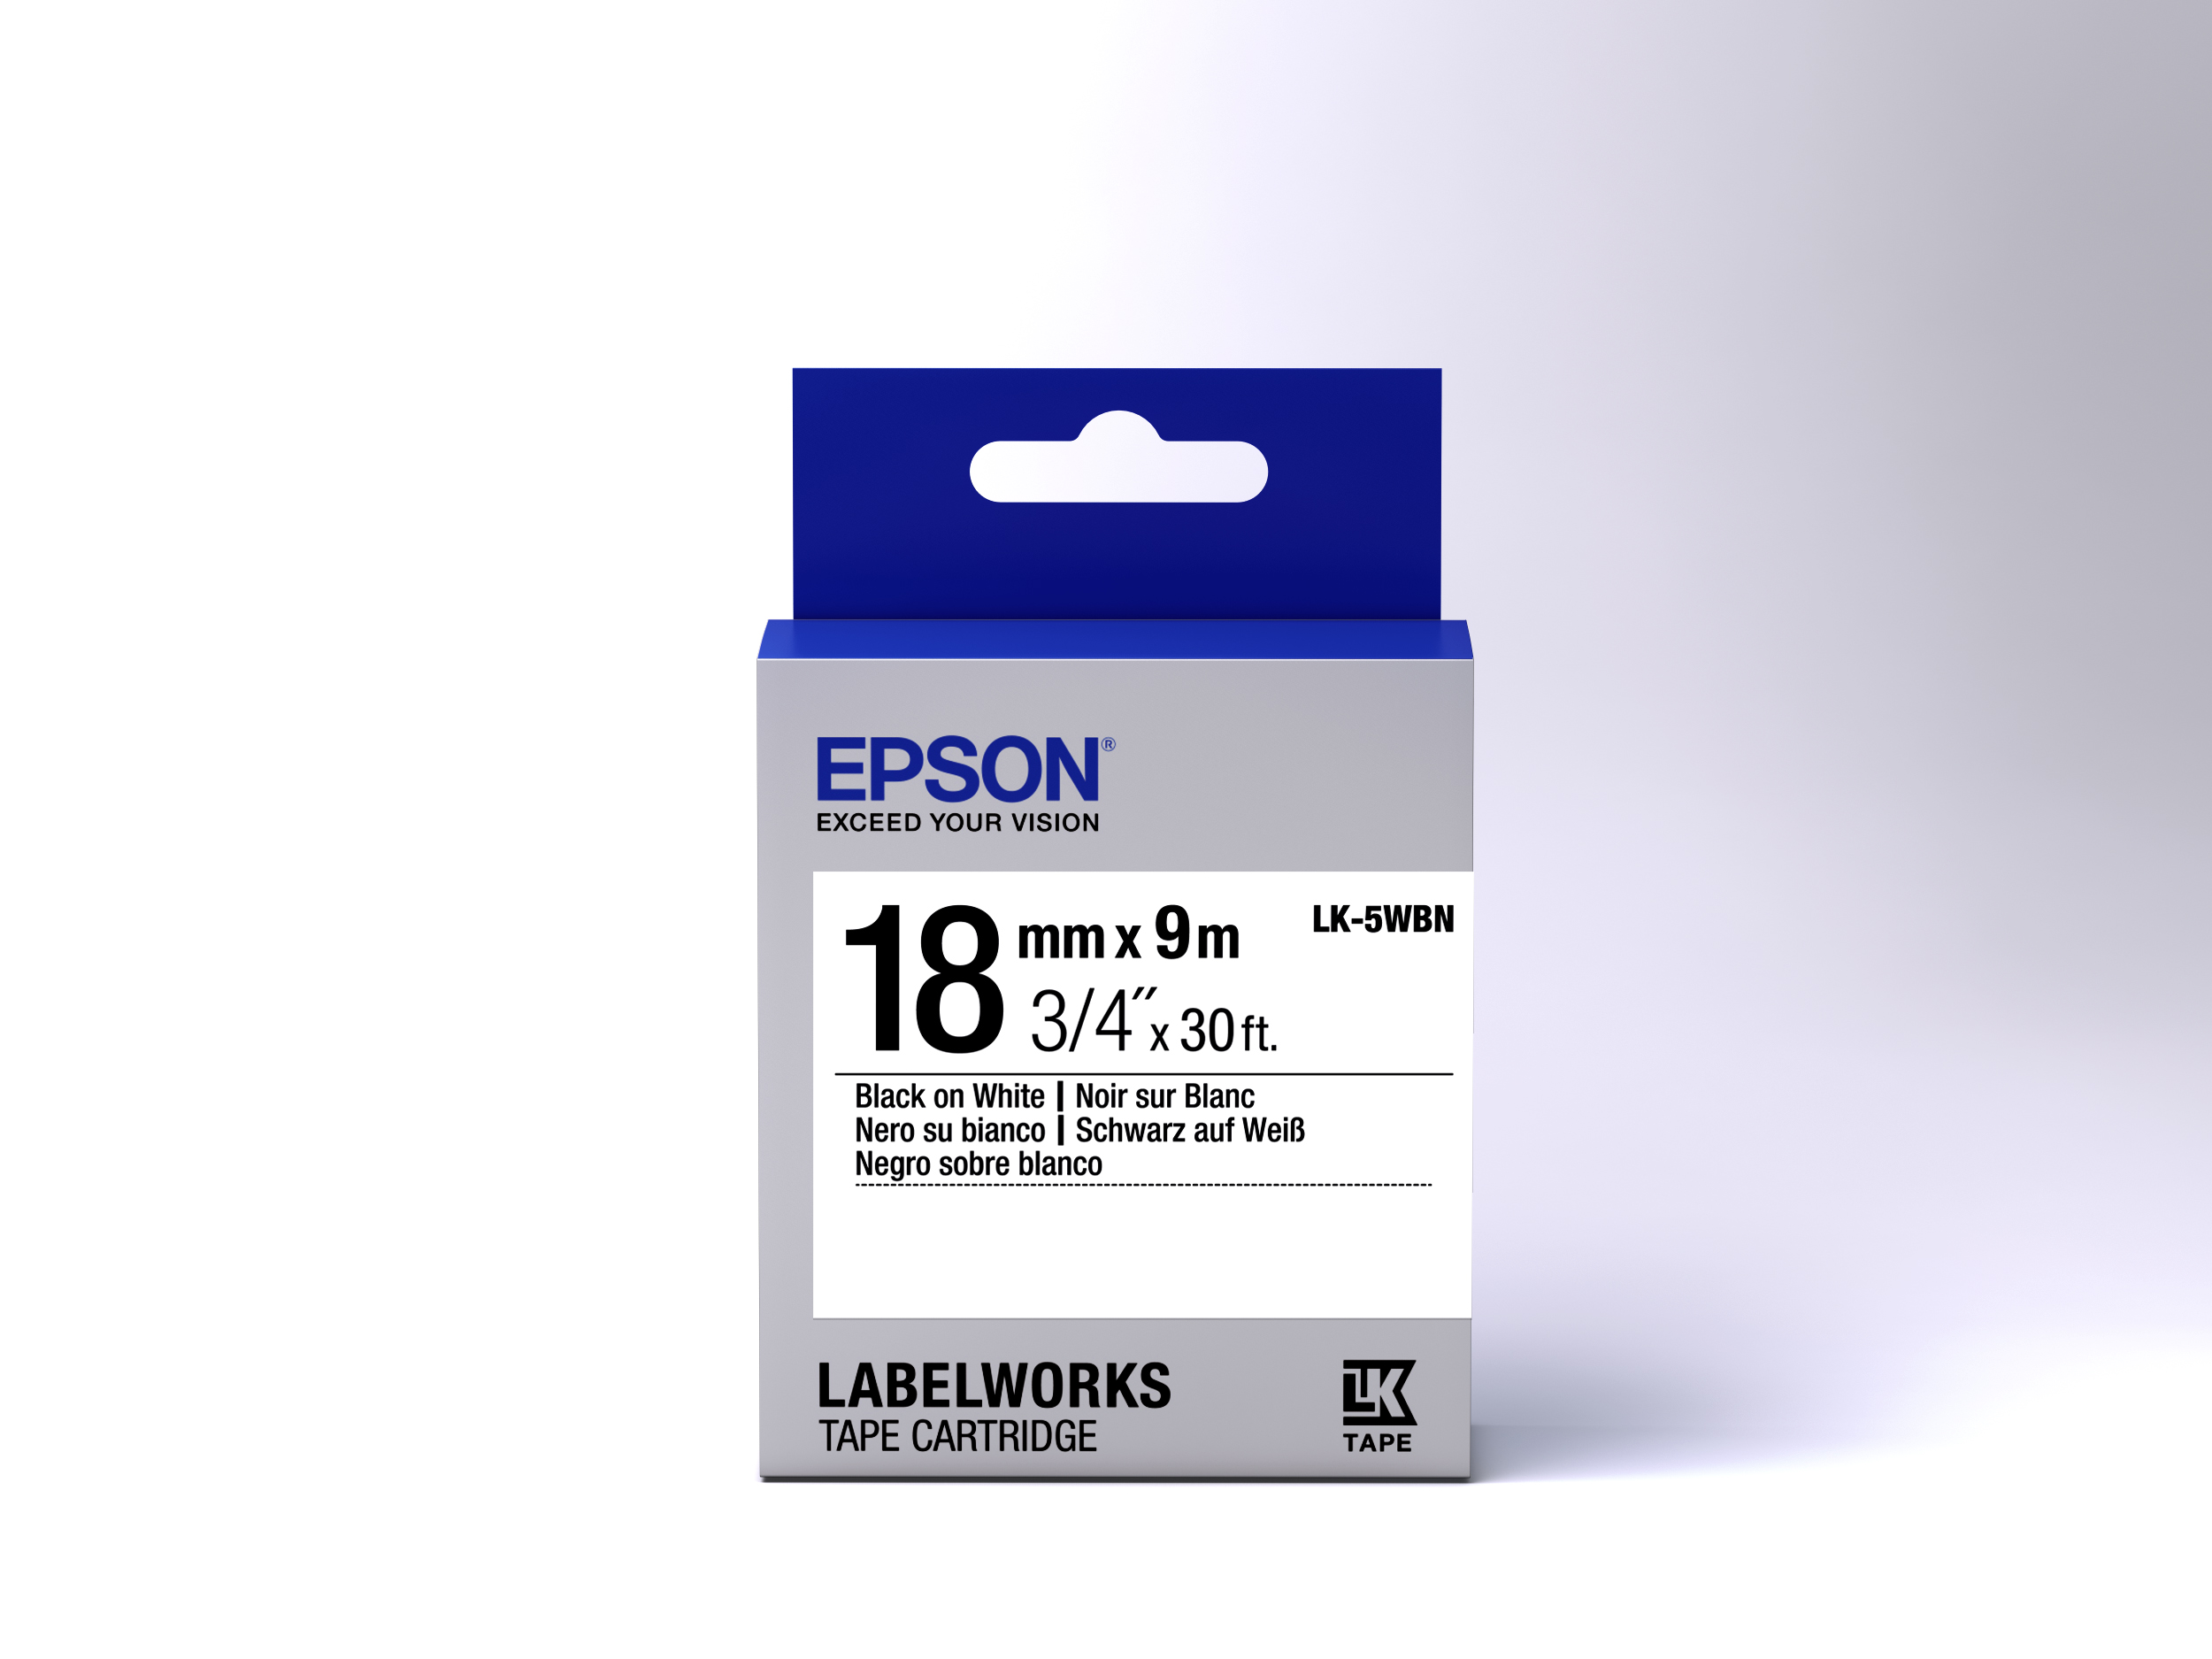 EPSON Paper Label LK-5WBN